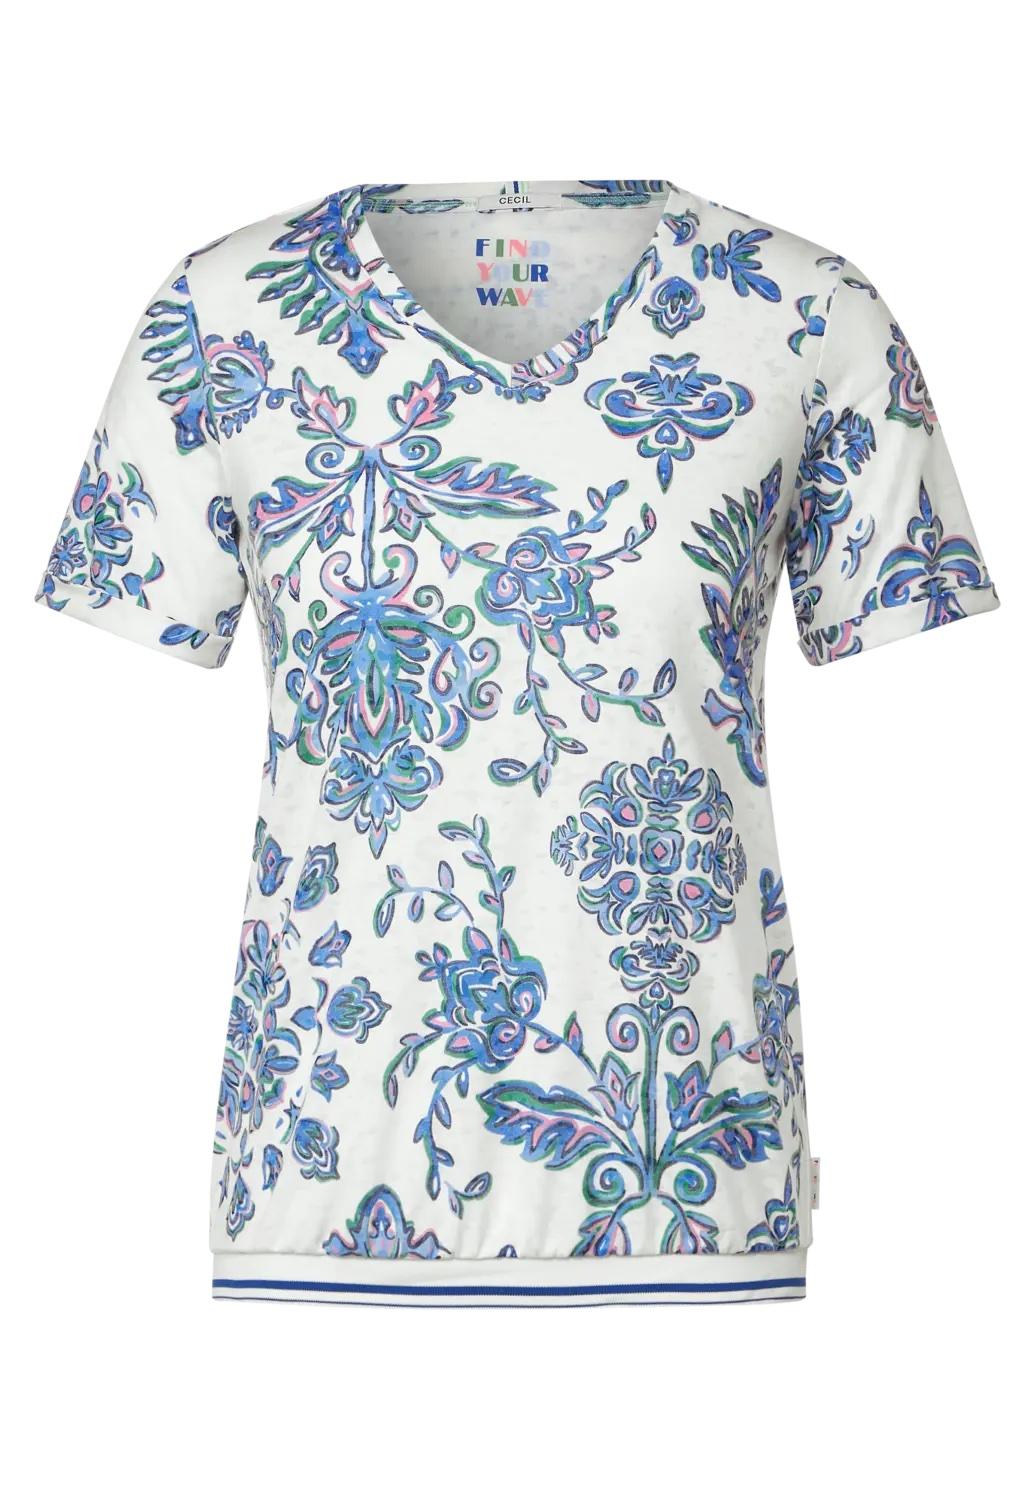 CECIL tričko s viacfarebným ornamentom, van